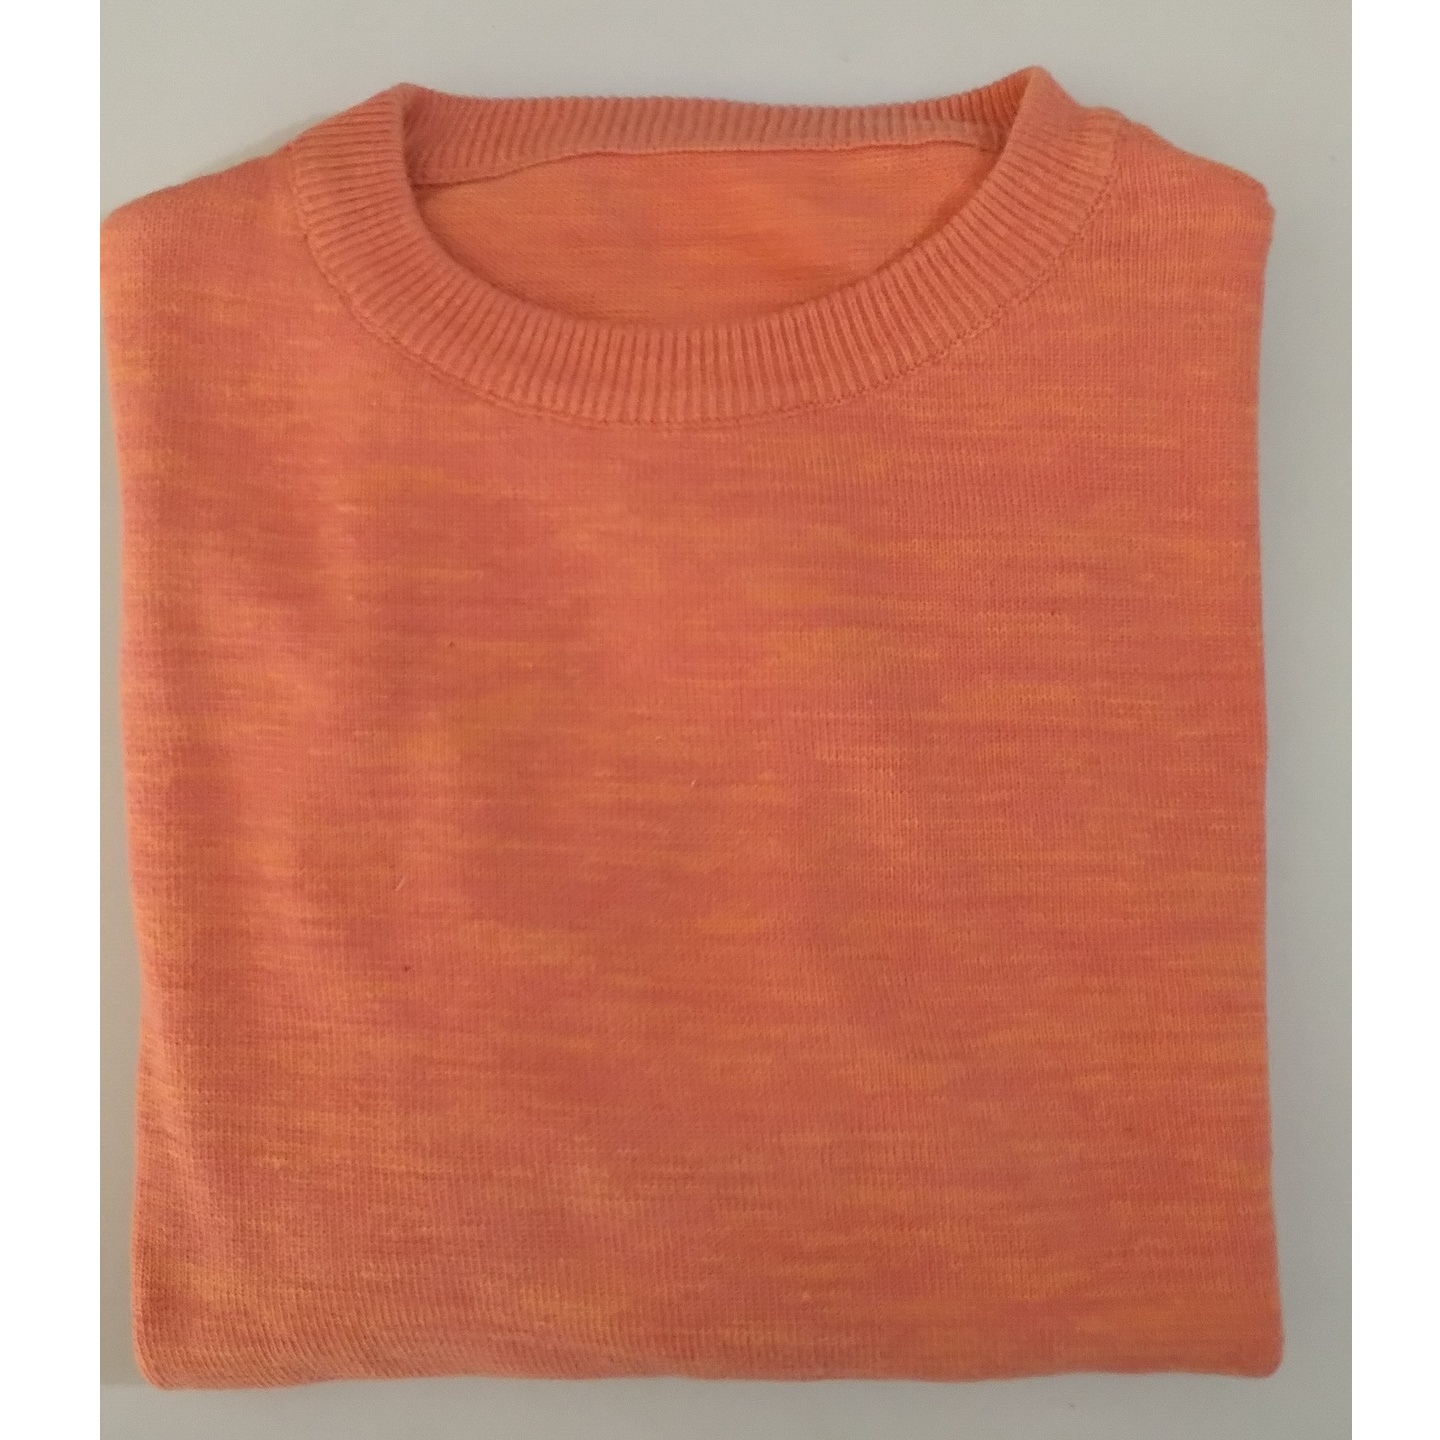 Peach - Orange Textured Tshirt